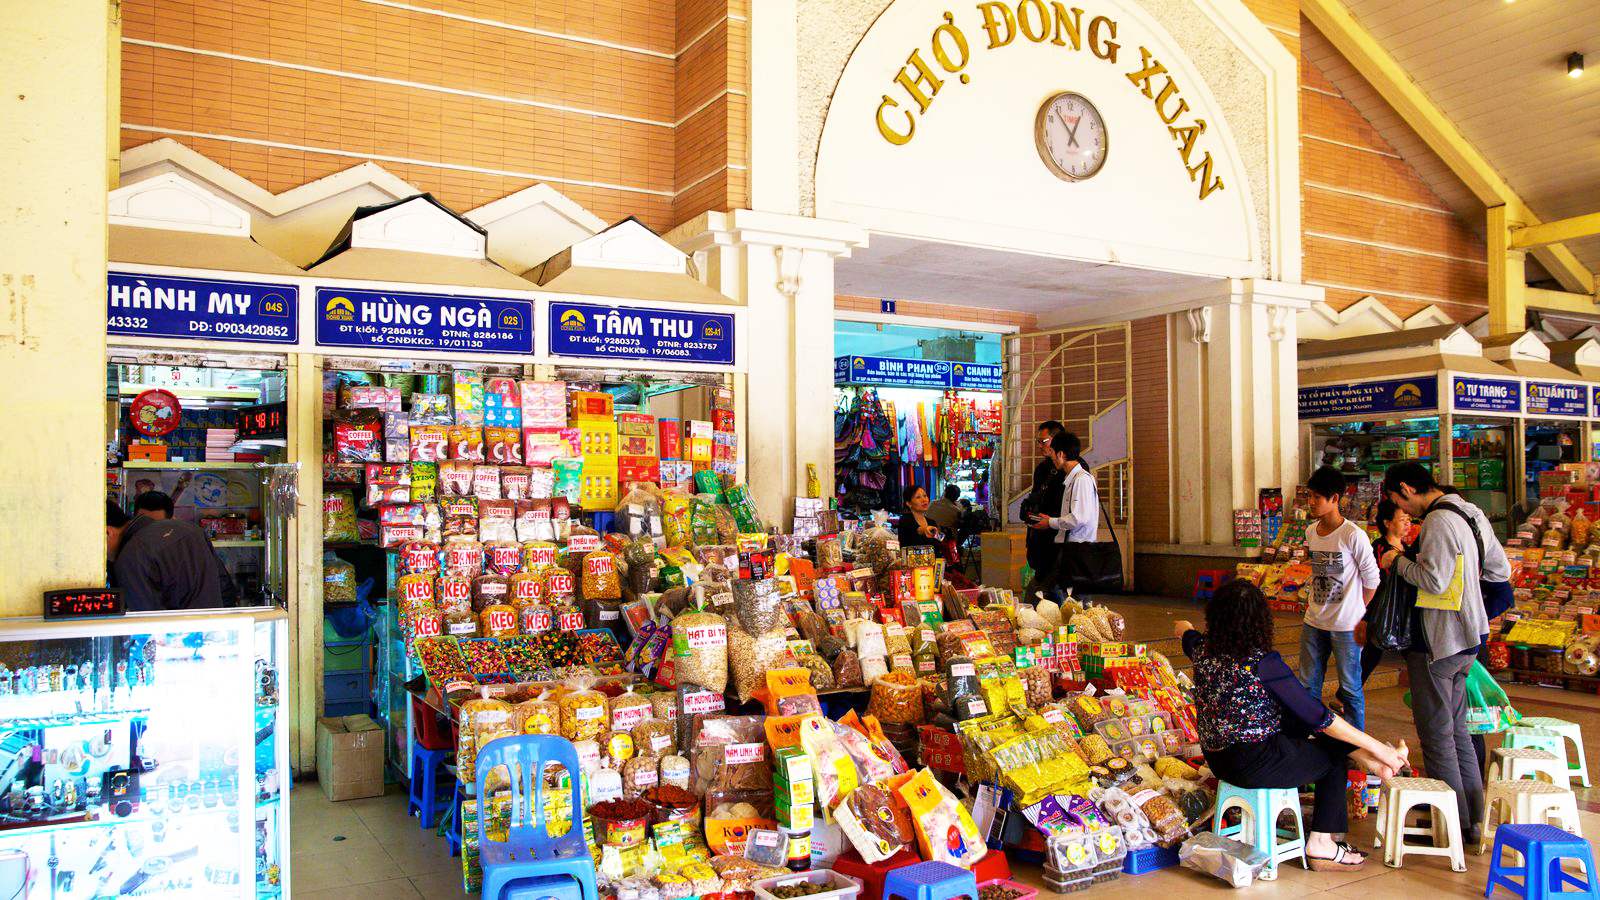 35756-Dong-Xuan-Market